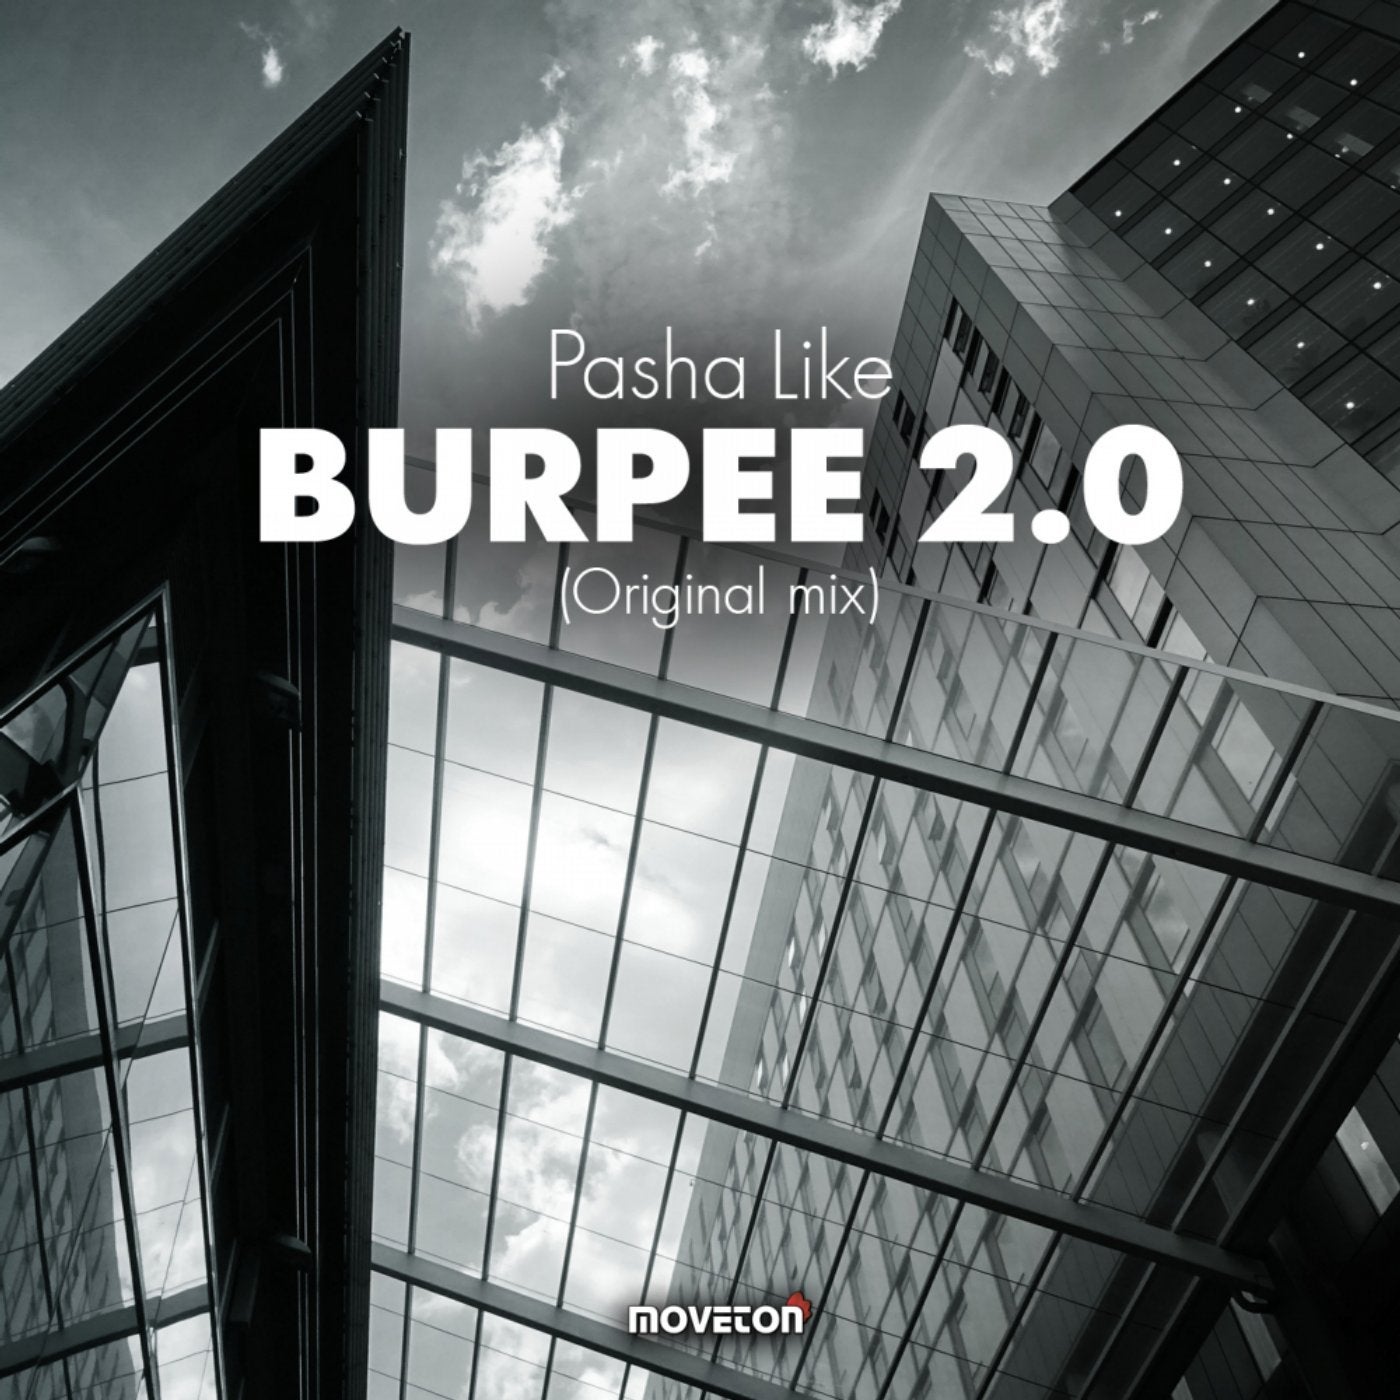 Burpee 2.0